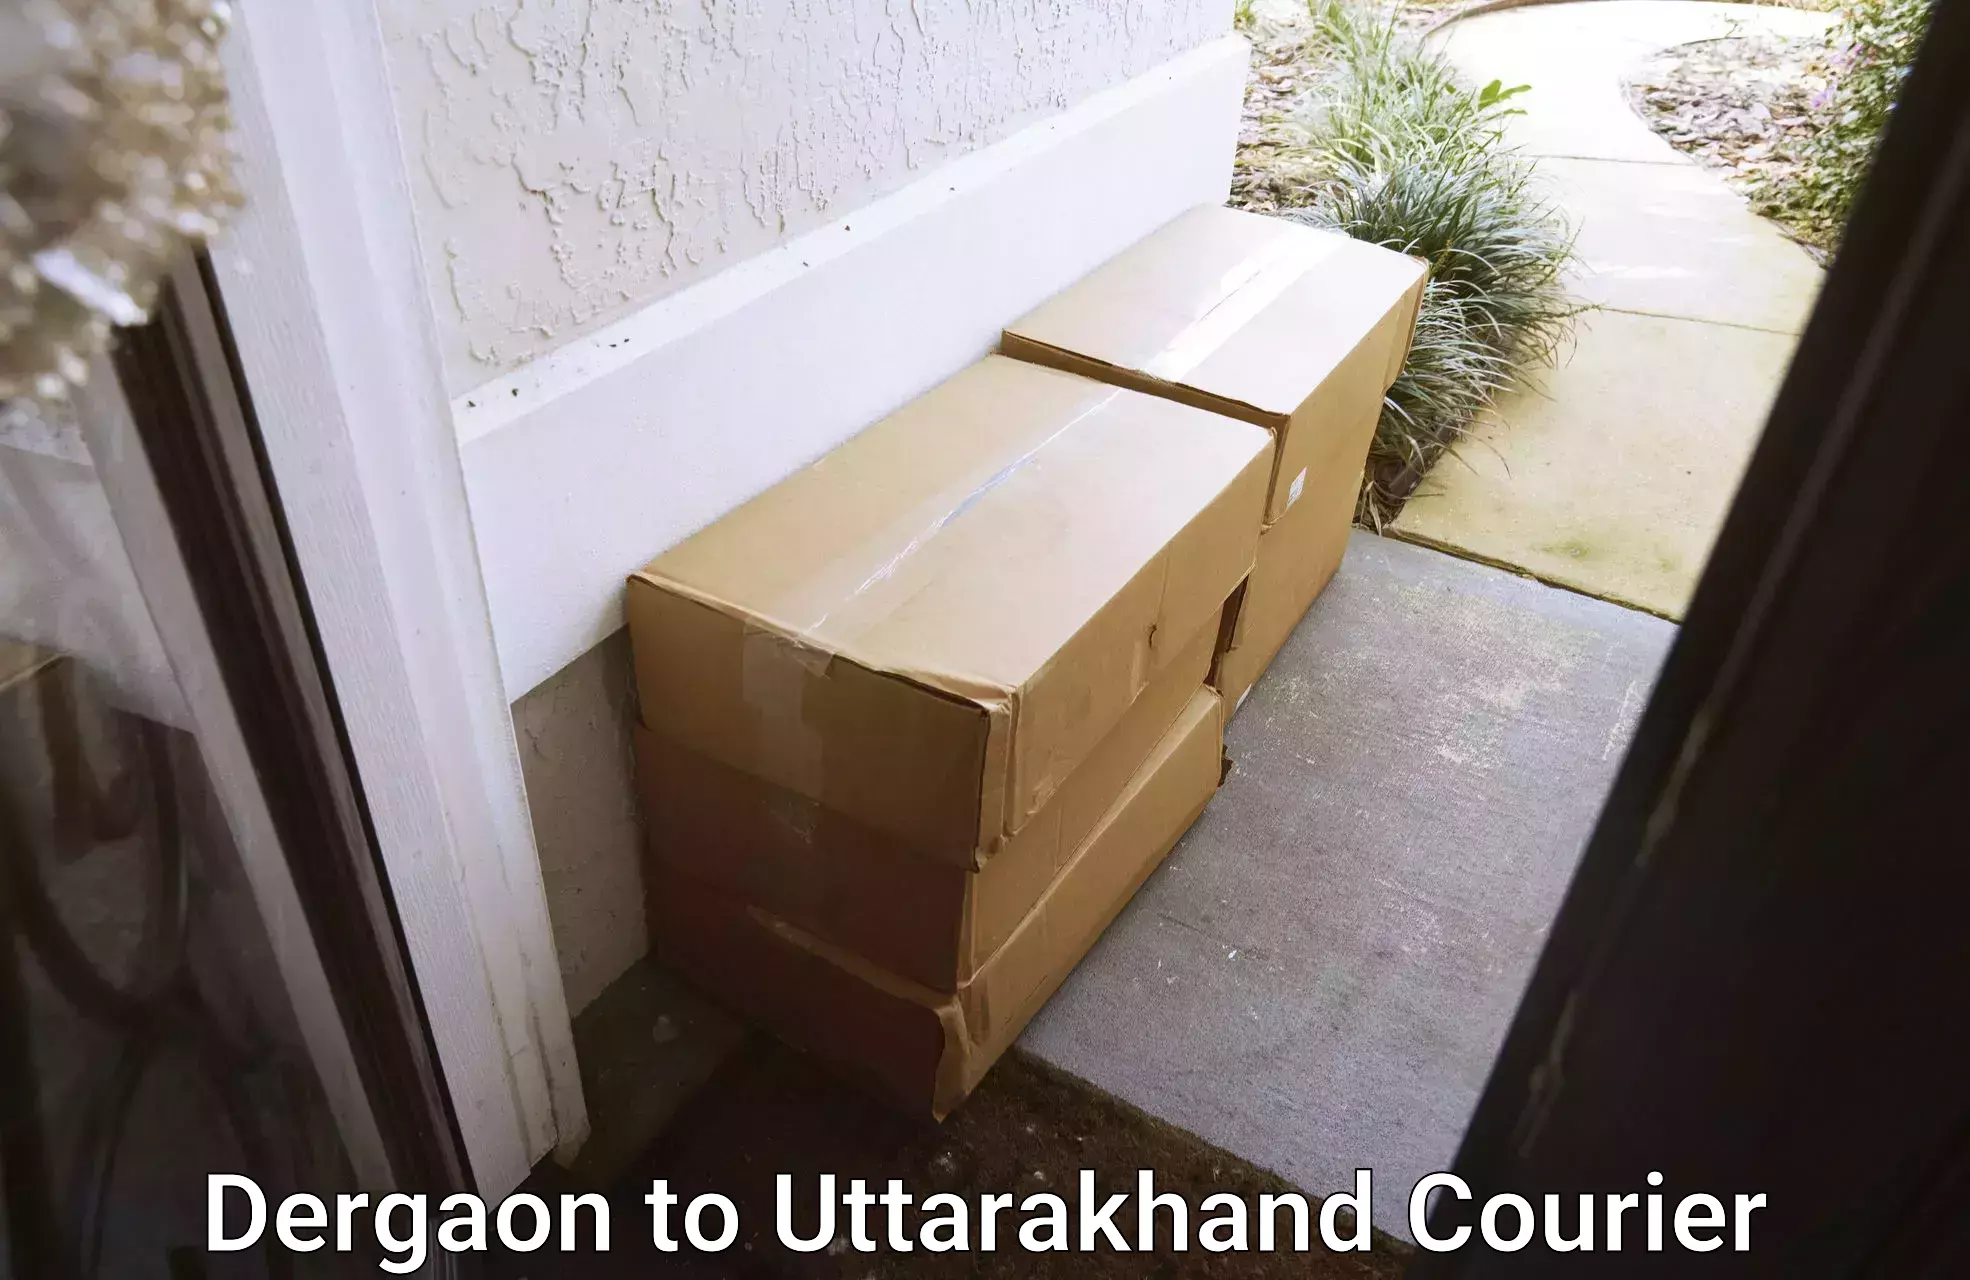 Easy return solutions Dergaon to Uttarakhand